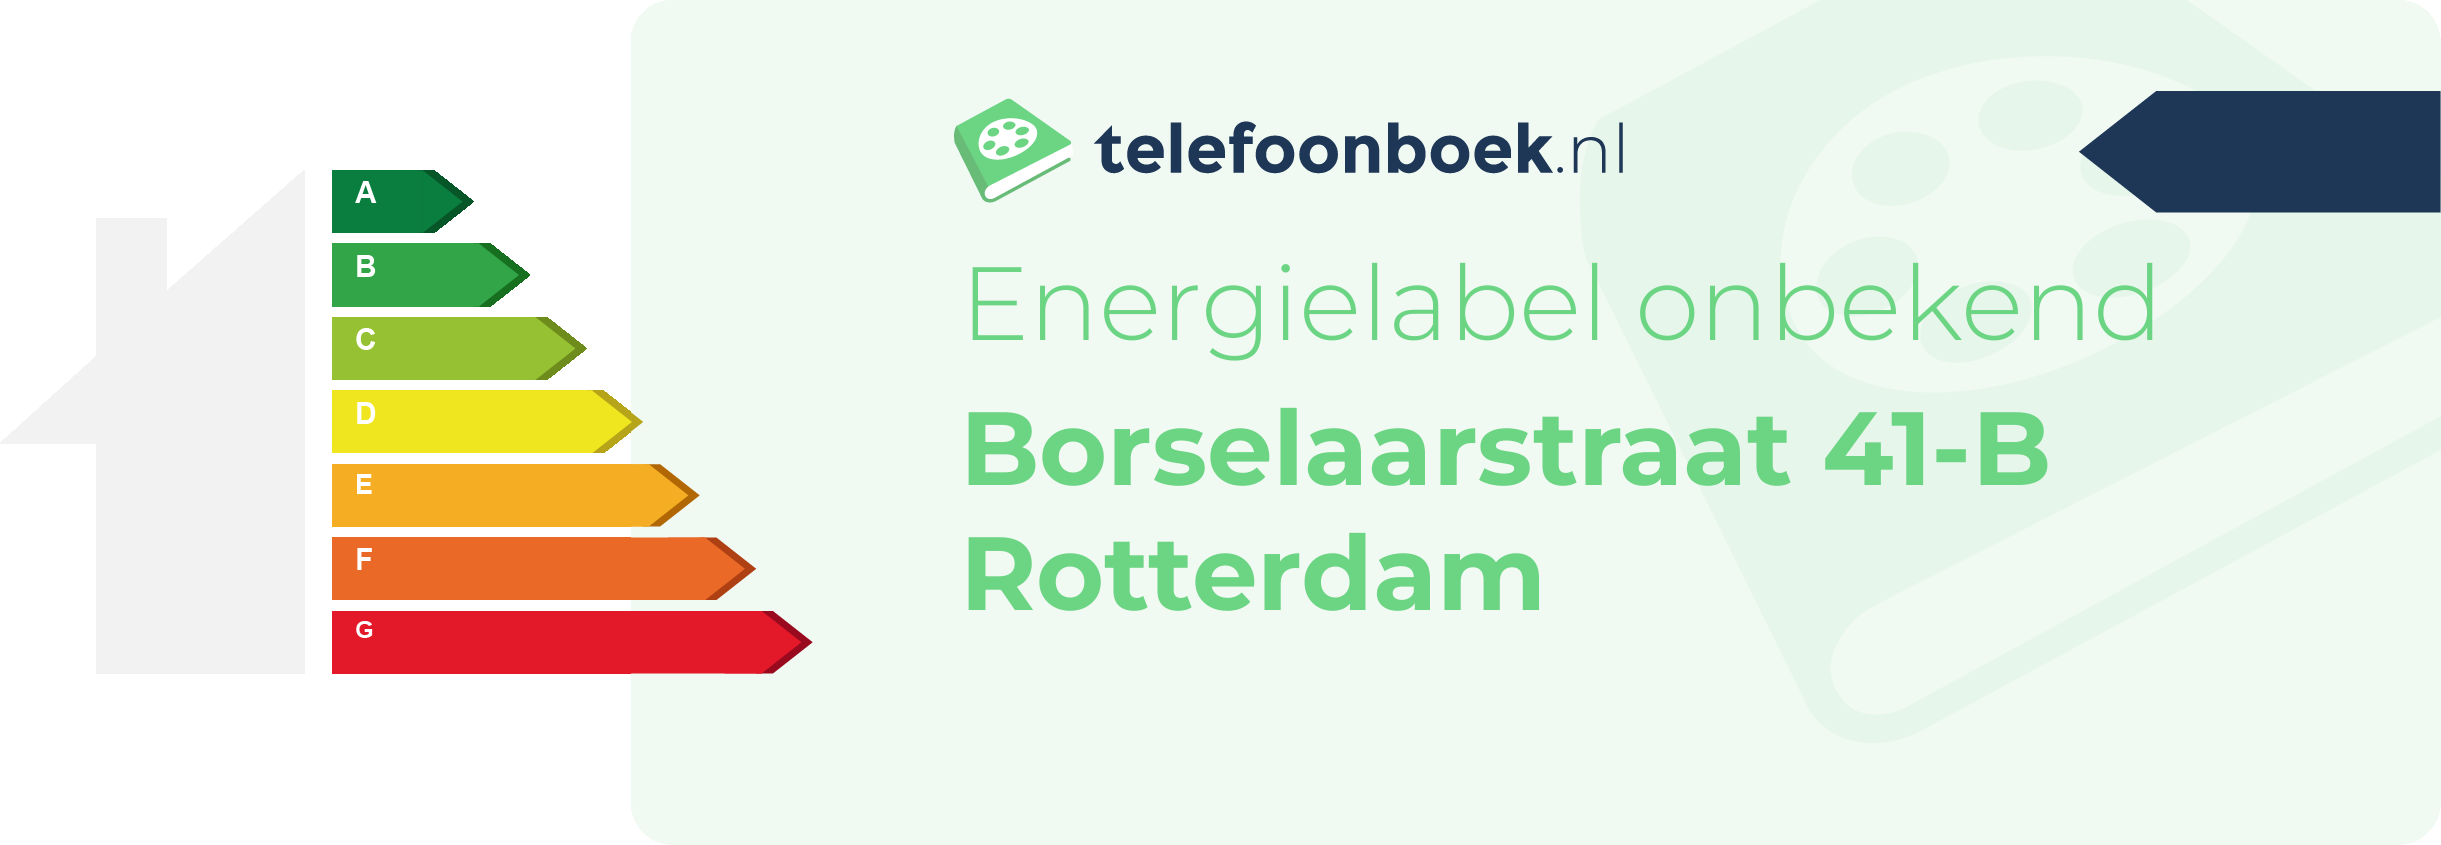 Energielabel Borselaarstraat 41-B Rotterdam